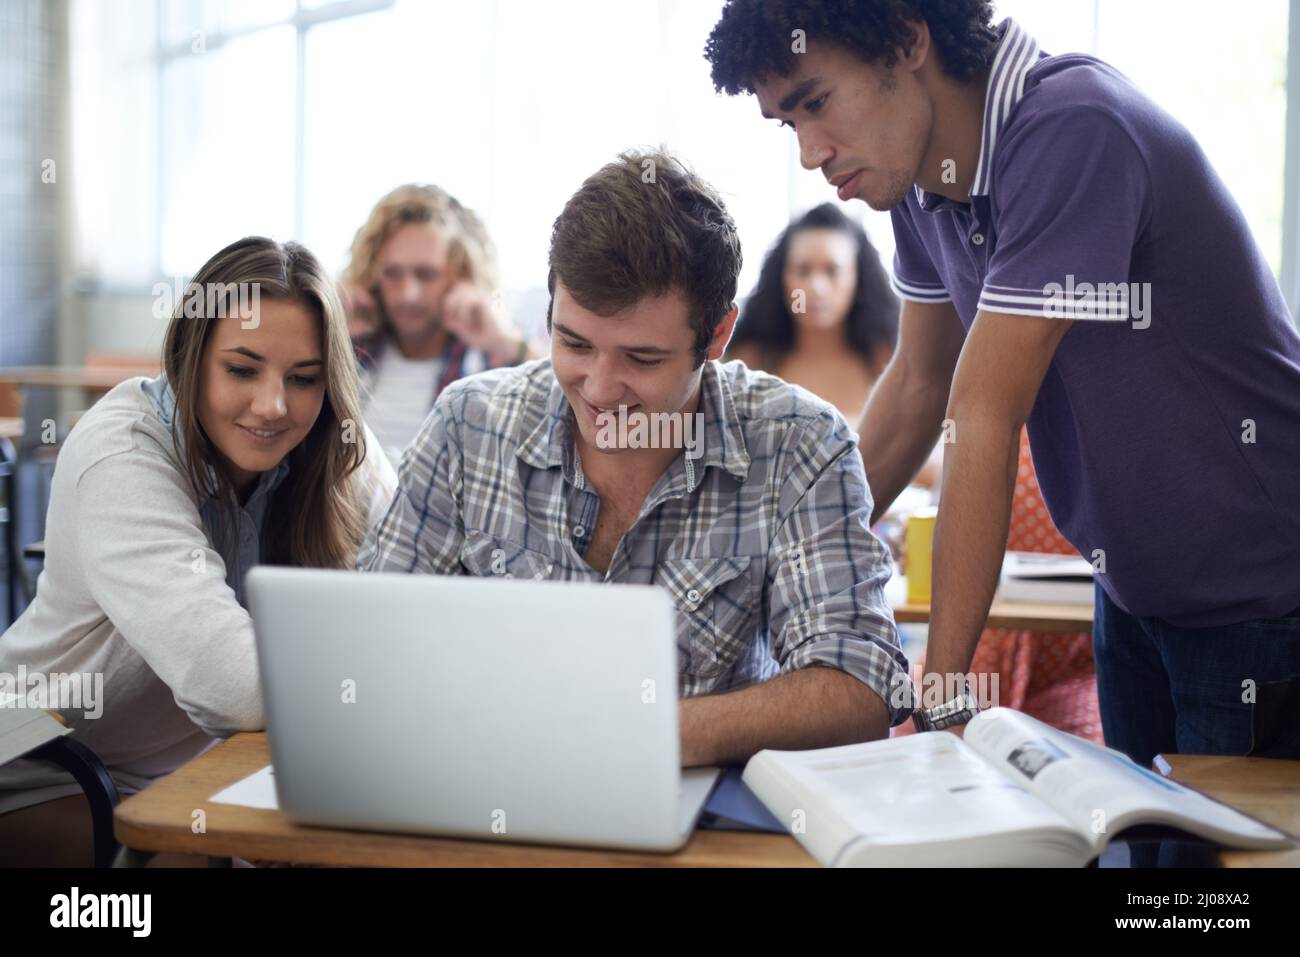 Utiliser chaque ressource pour leur projet. Photo d'un groupe d'étudiants universitaires travaillant sur des ordinateurs portables en classe. Banque D'Images